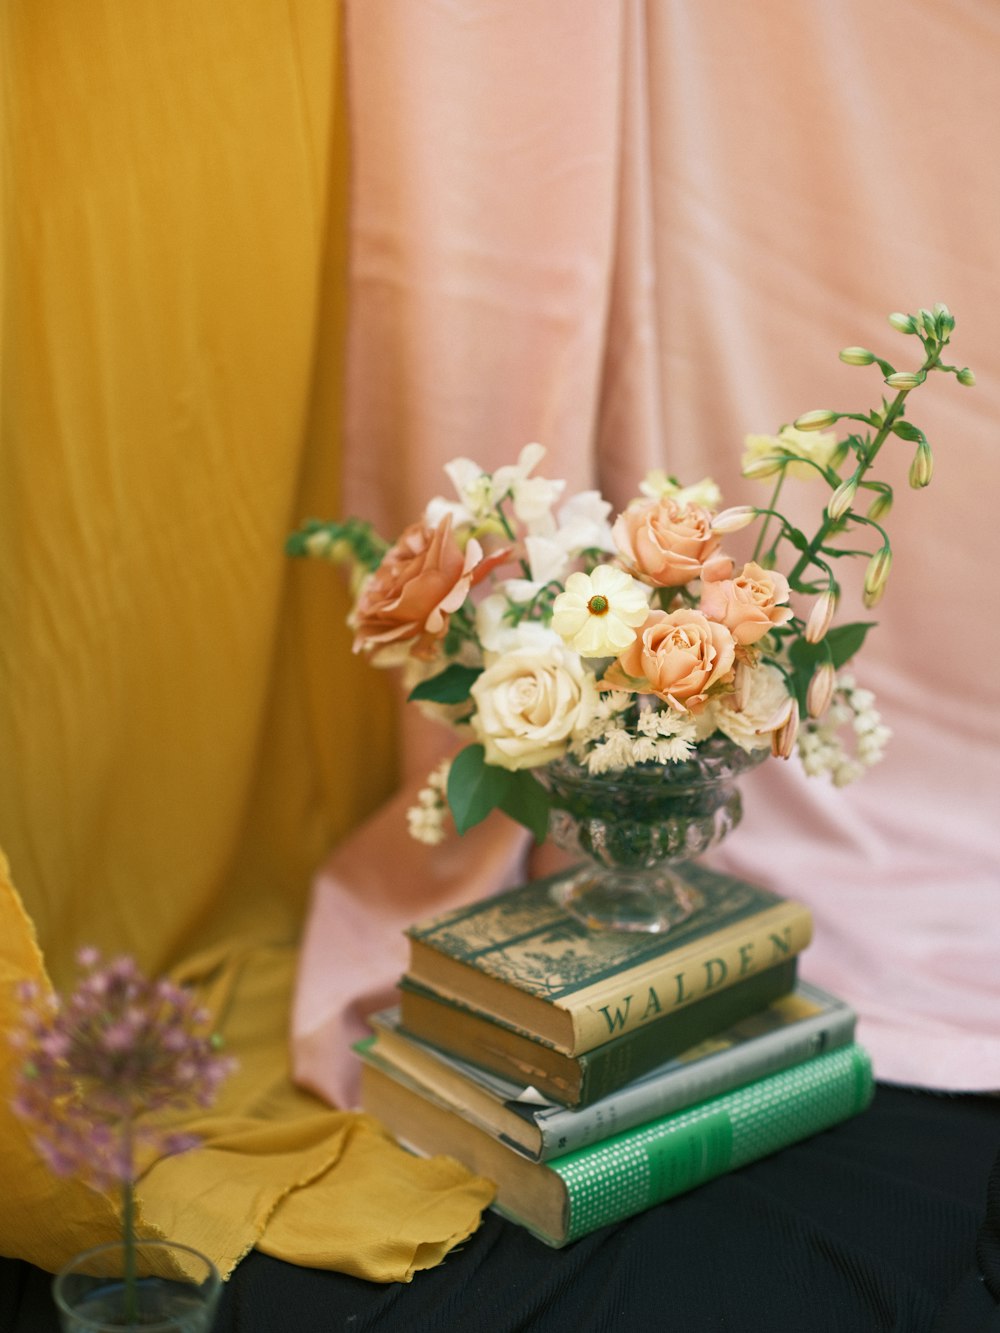 um vaso de flores sentado em cima de uma pilha de livros